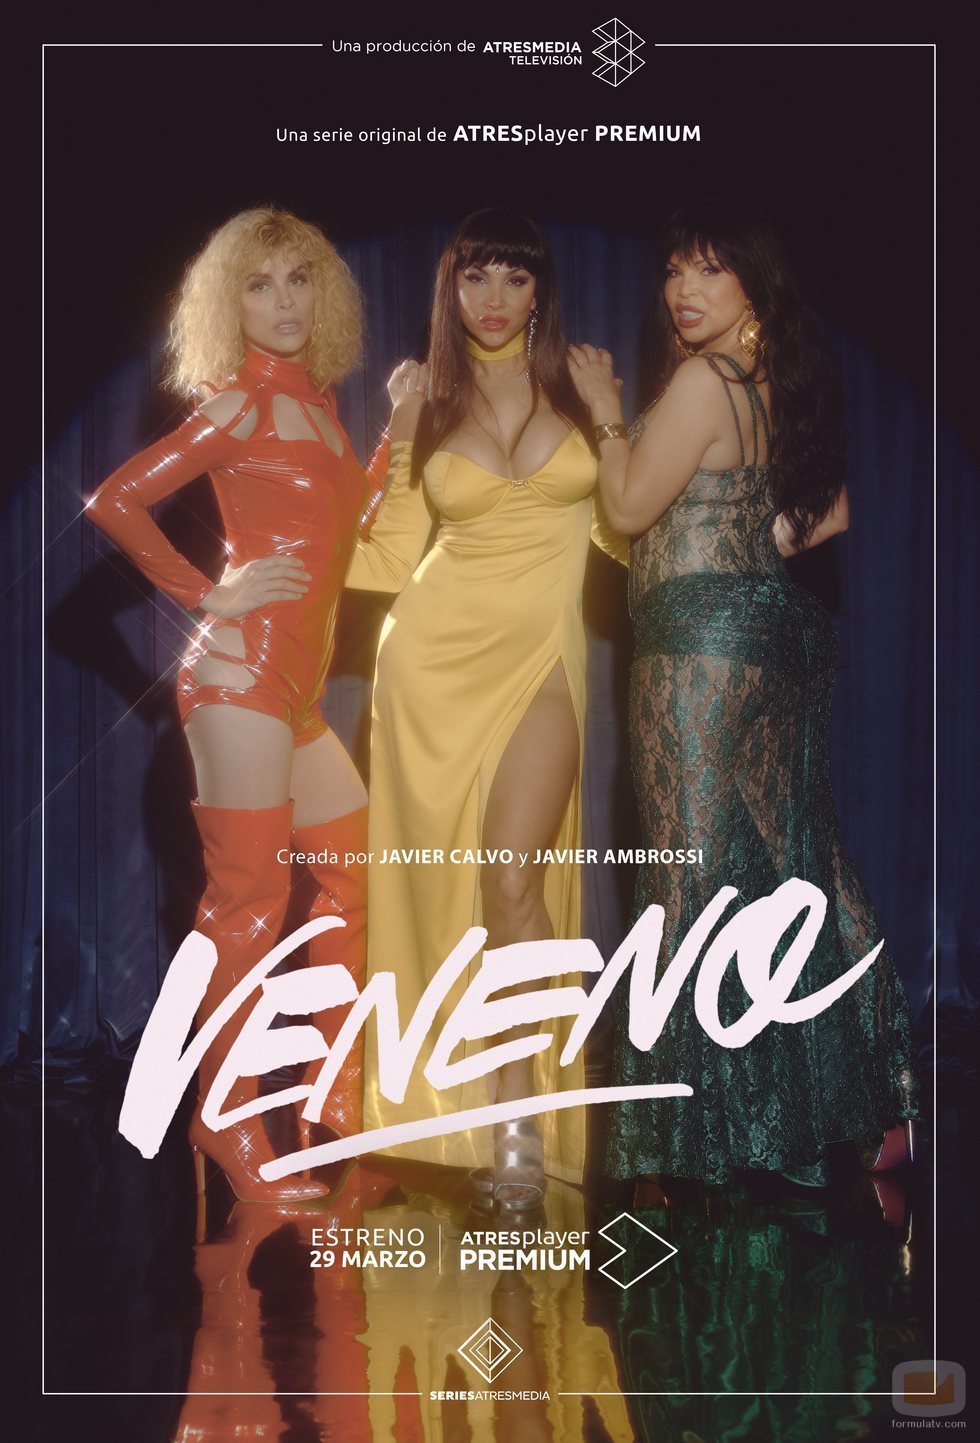 Cartel oficial de 'Veneno'